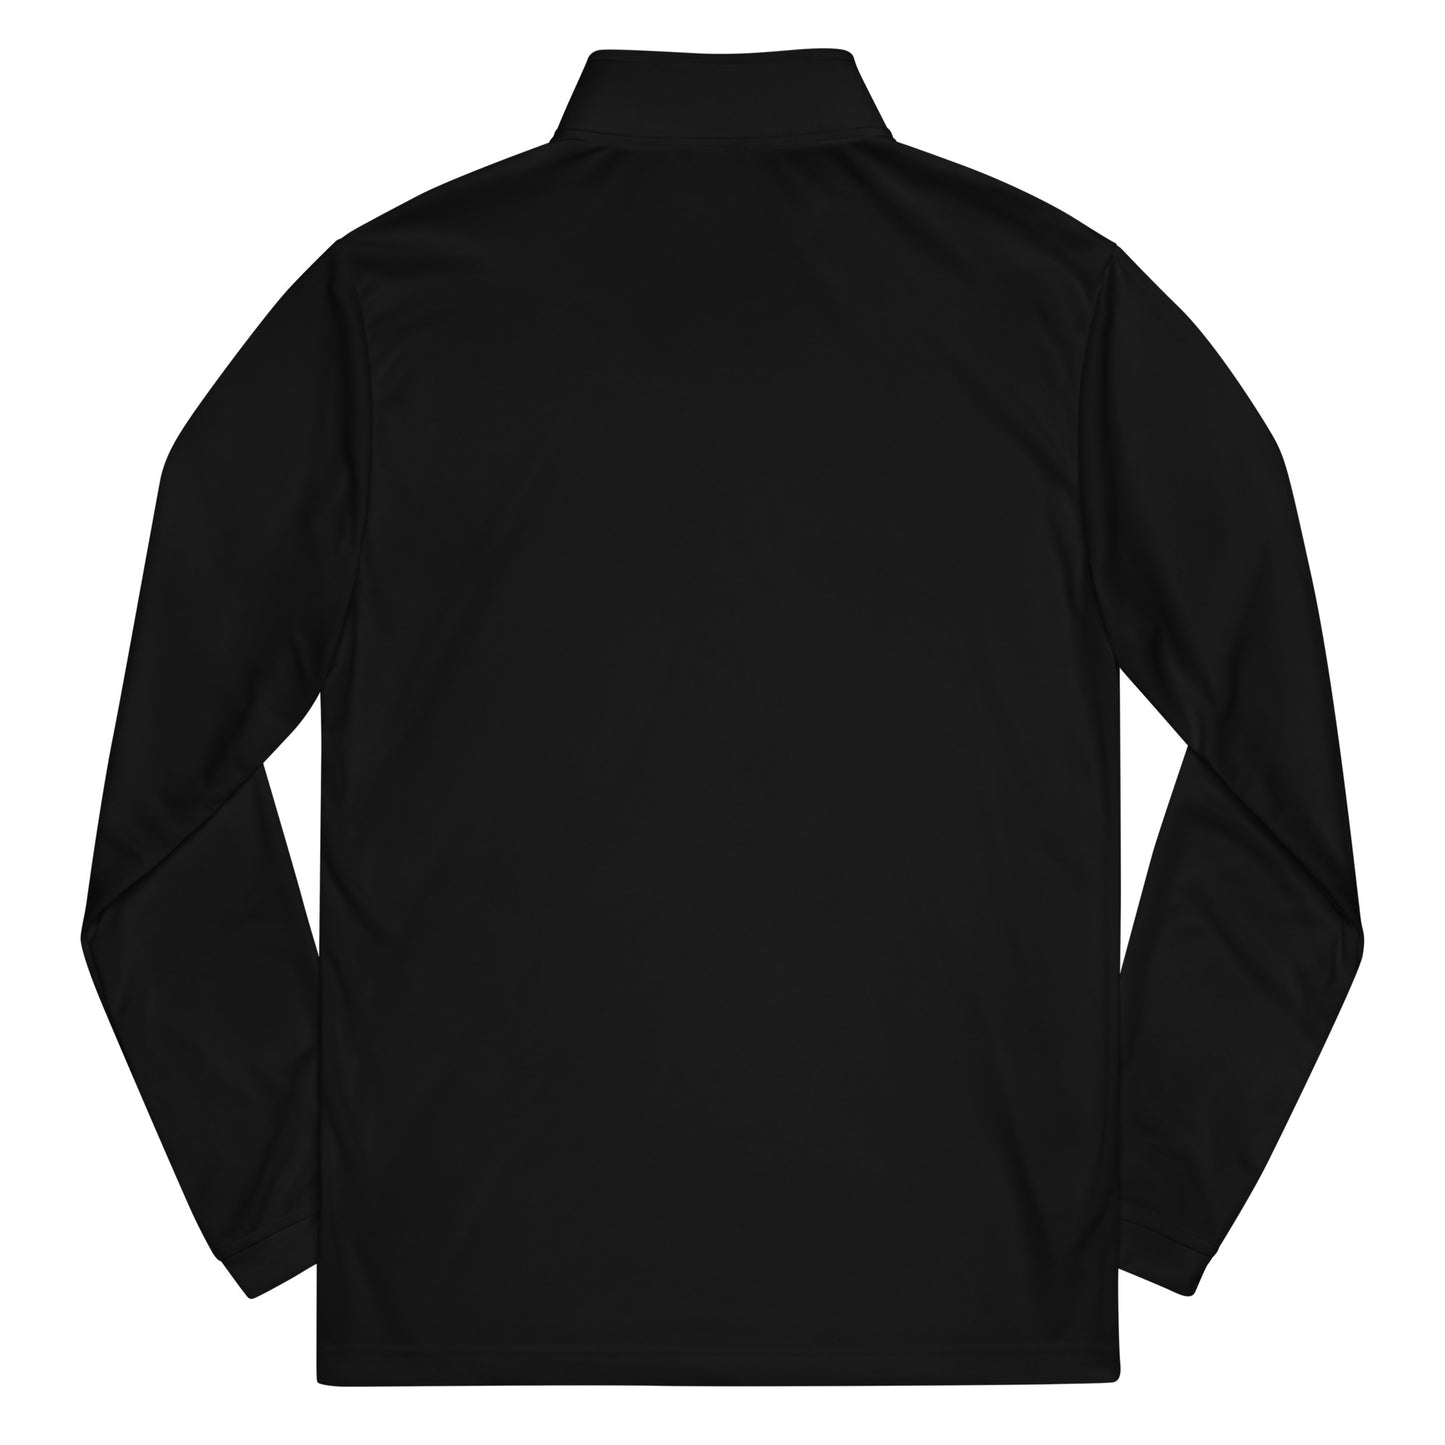 Quarter zip pullover - Ciocca